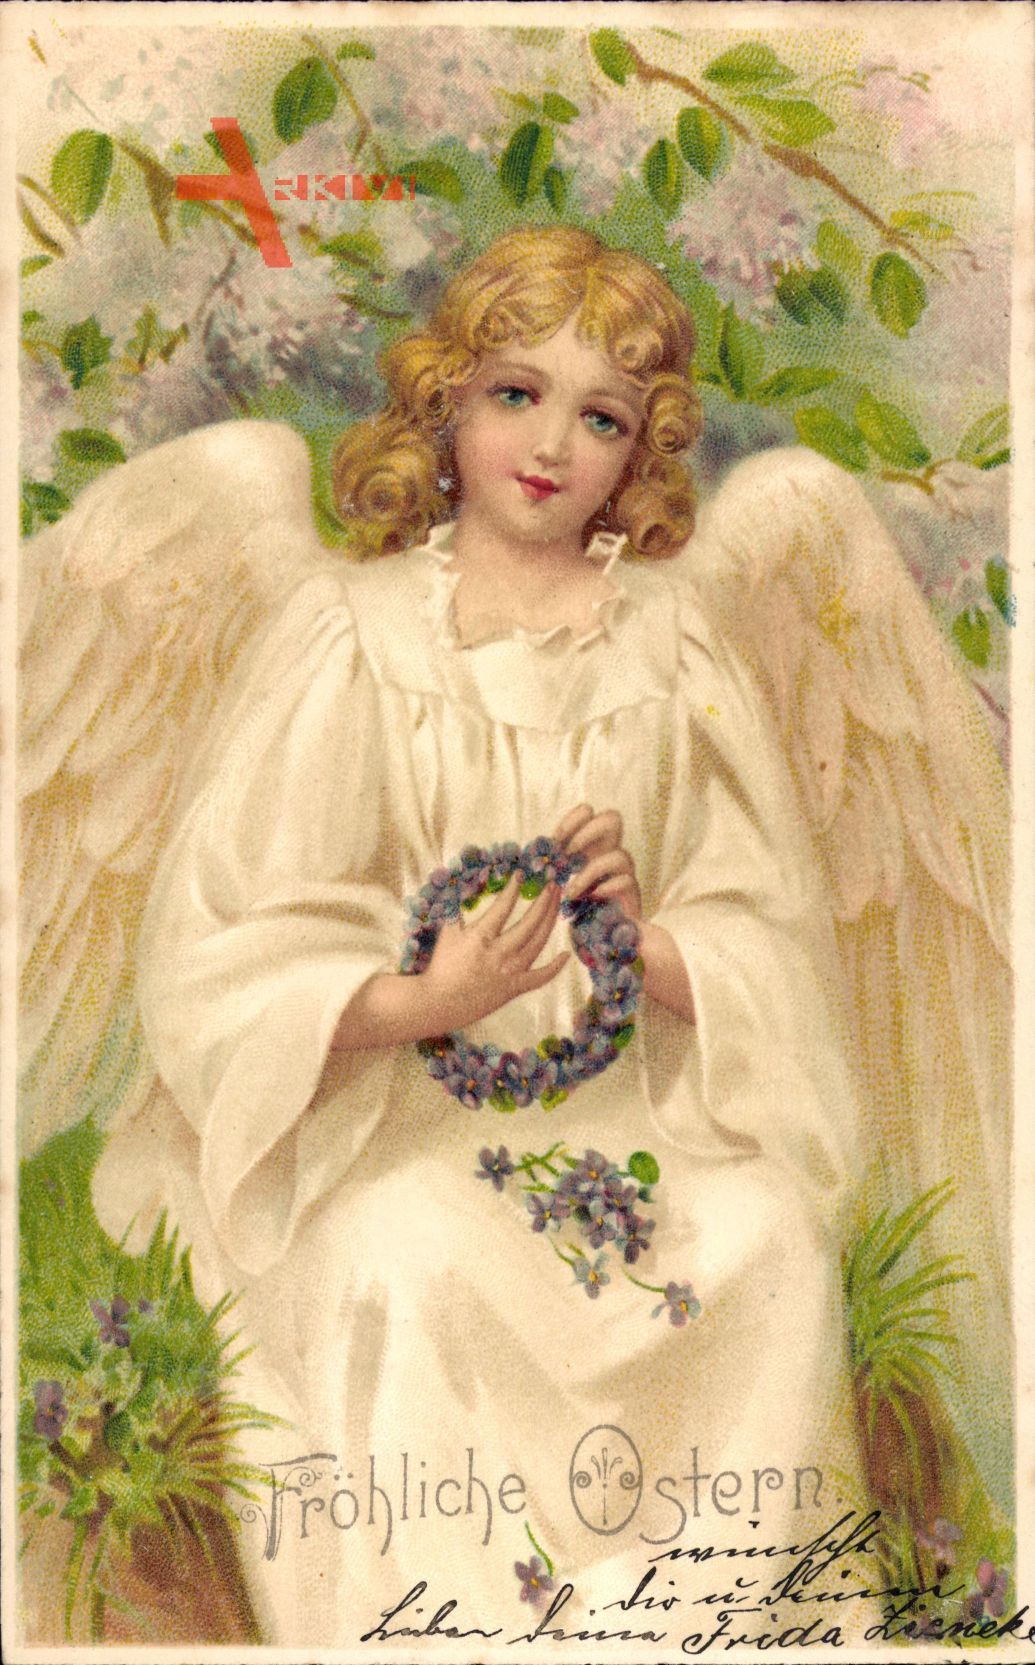 Glückwunsch Ostern, Engel mit Blumenkranz, Kitsch